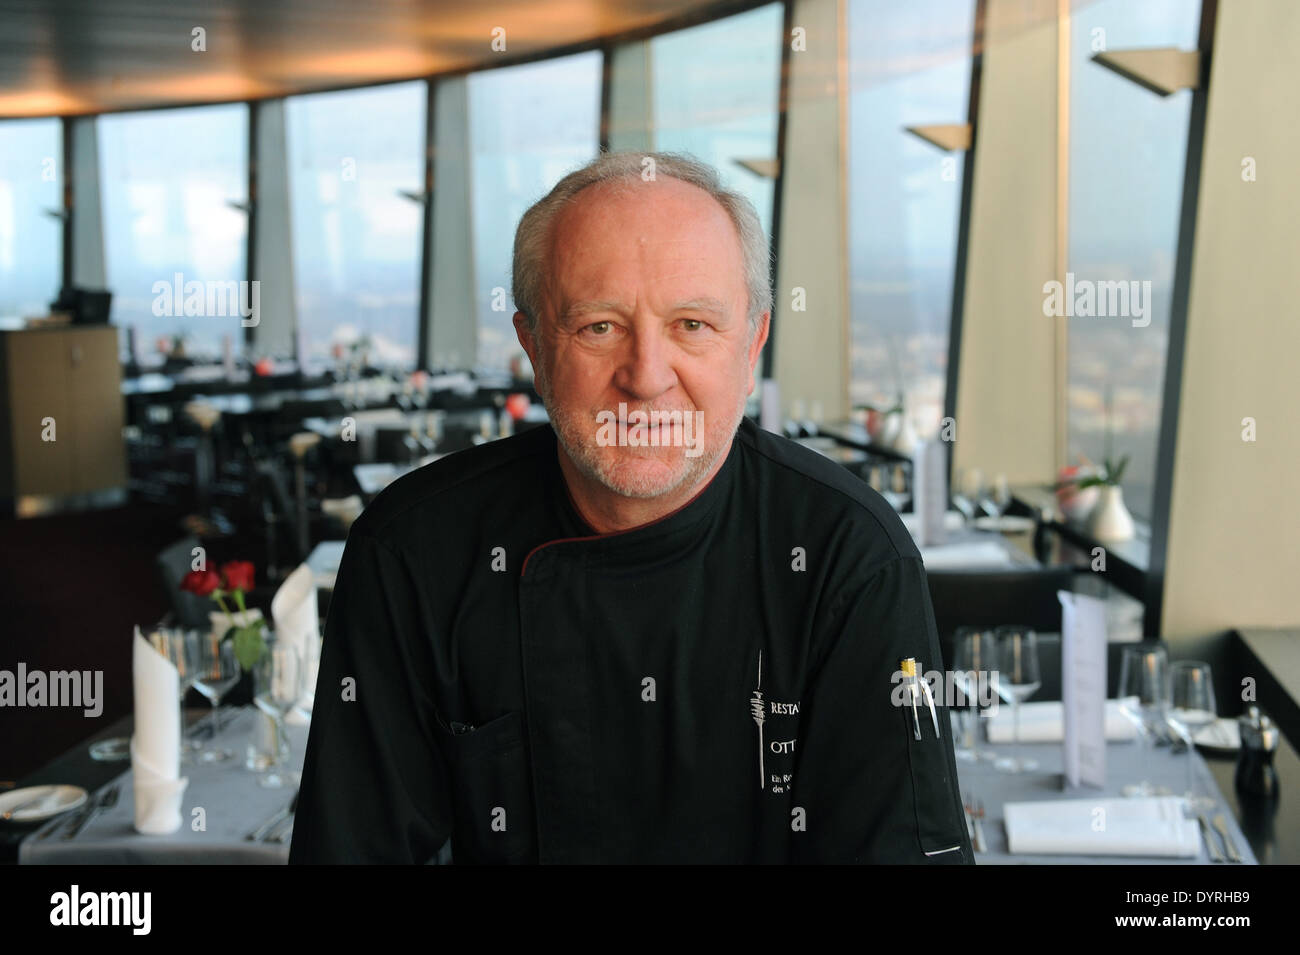 Otto Koch in der "Restaurant 181' im Olympiaturm München 2011  Stockfotografie - Alamy